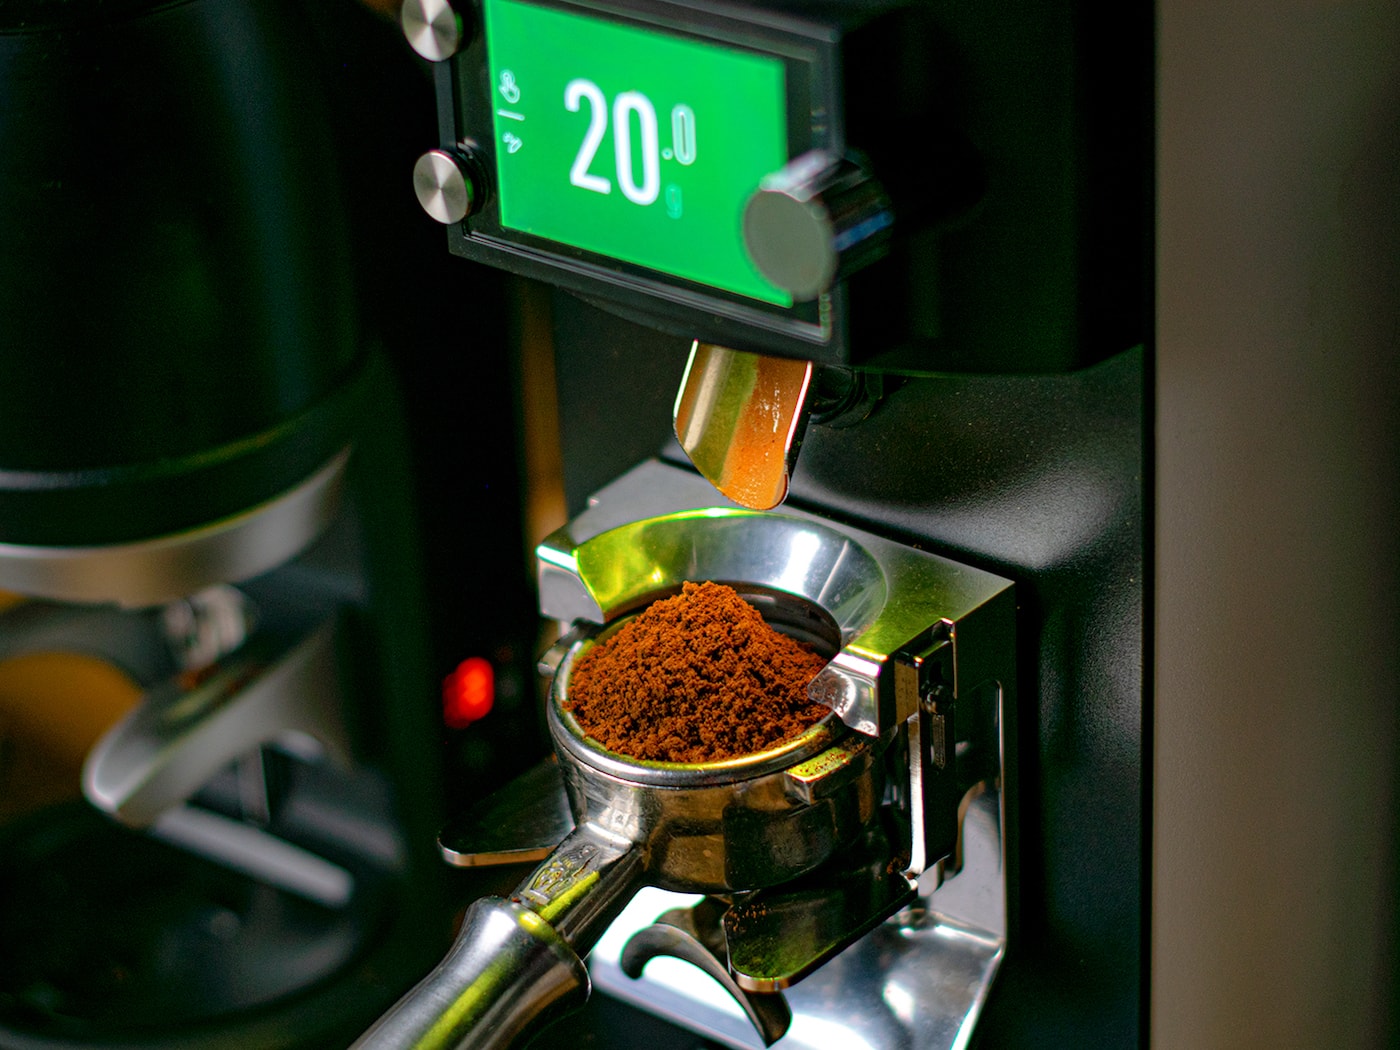 Grinding 20 grams of 700 coffee blend